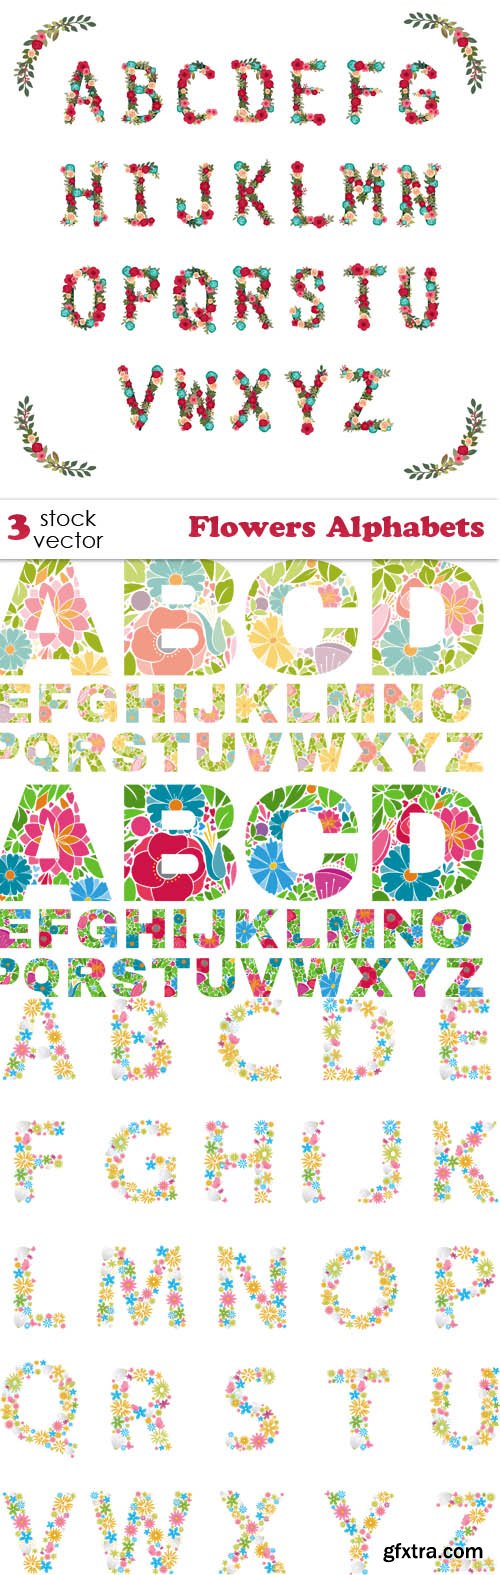 Vectors - Flowers Alphabets